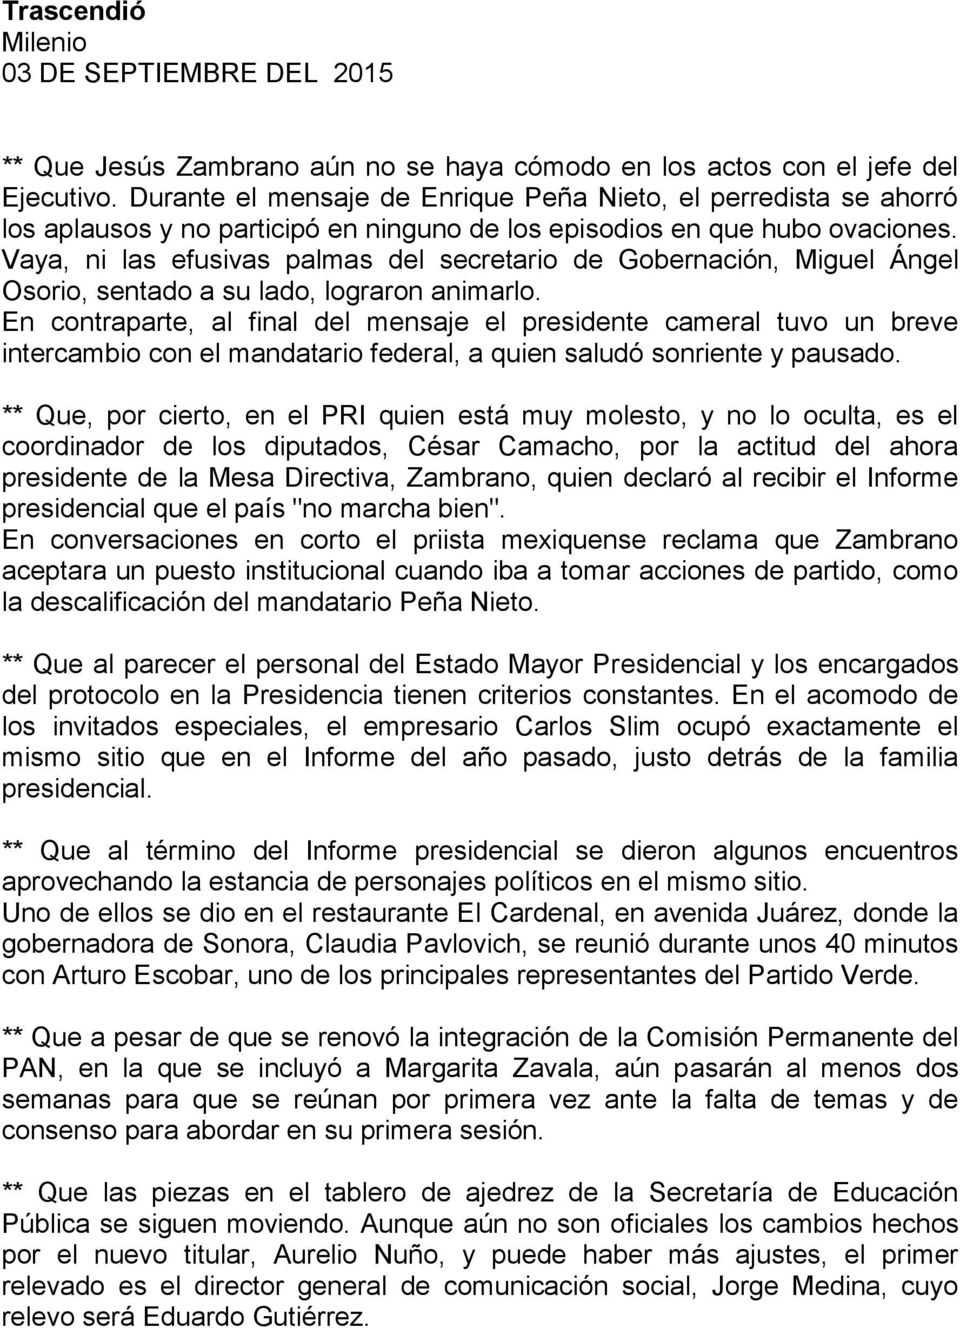 Vaya, ni las efusivas palmas del secretario de Gobernación, Miguel Ángel Osorio, sentado a su lado, lograron animarlo.